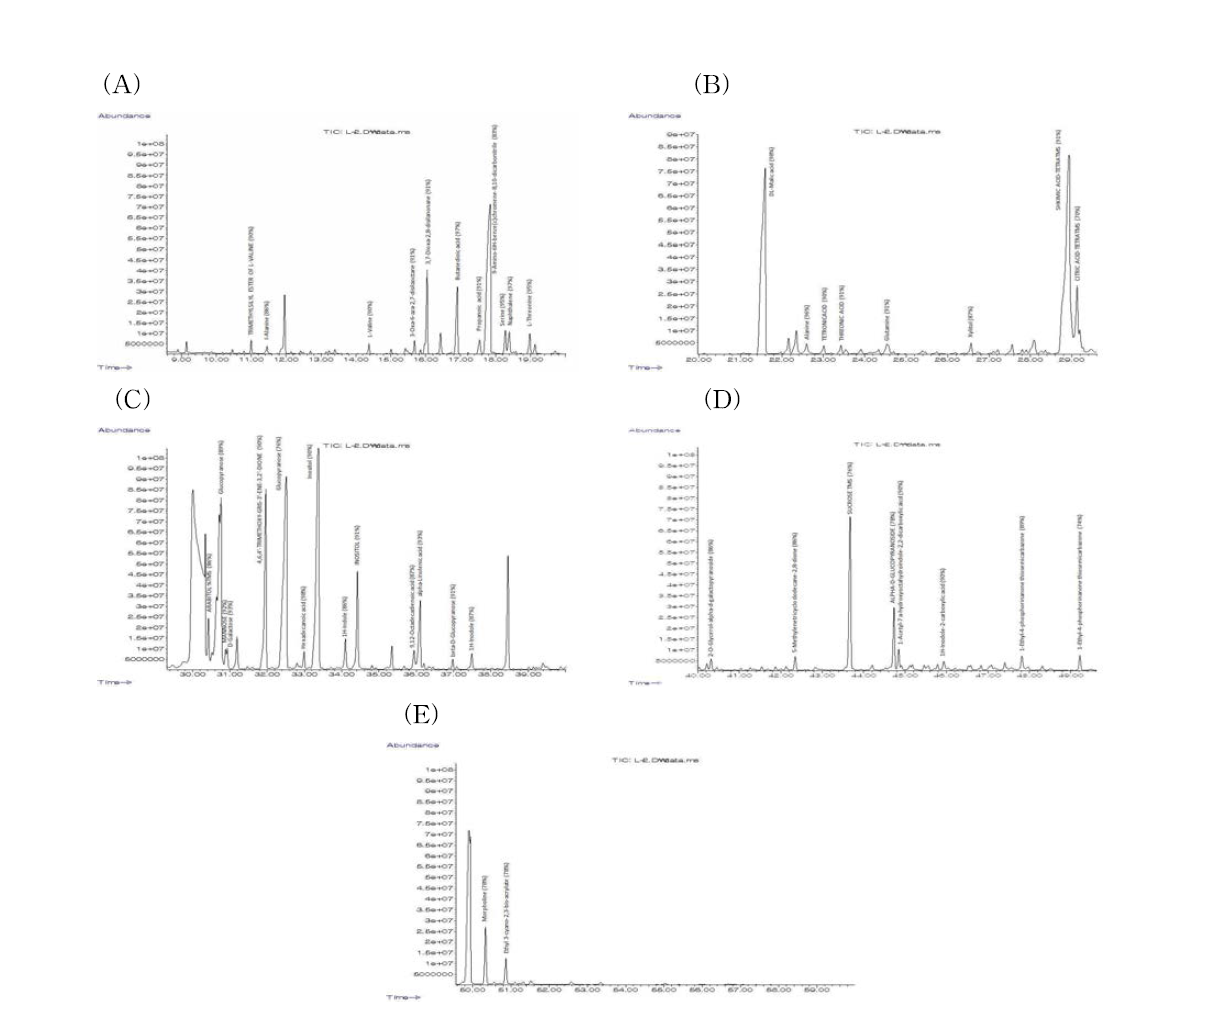 엉겅퀴 잎 추출물의 GC-MS 부분 Chromatogram (A: 9-20 min, B: 20-30 min, C: 30-40, D: 40-49 min), E: 49-60 min